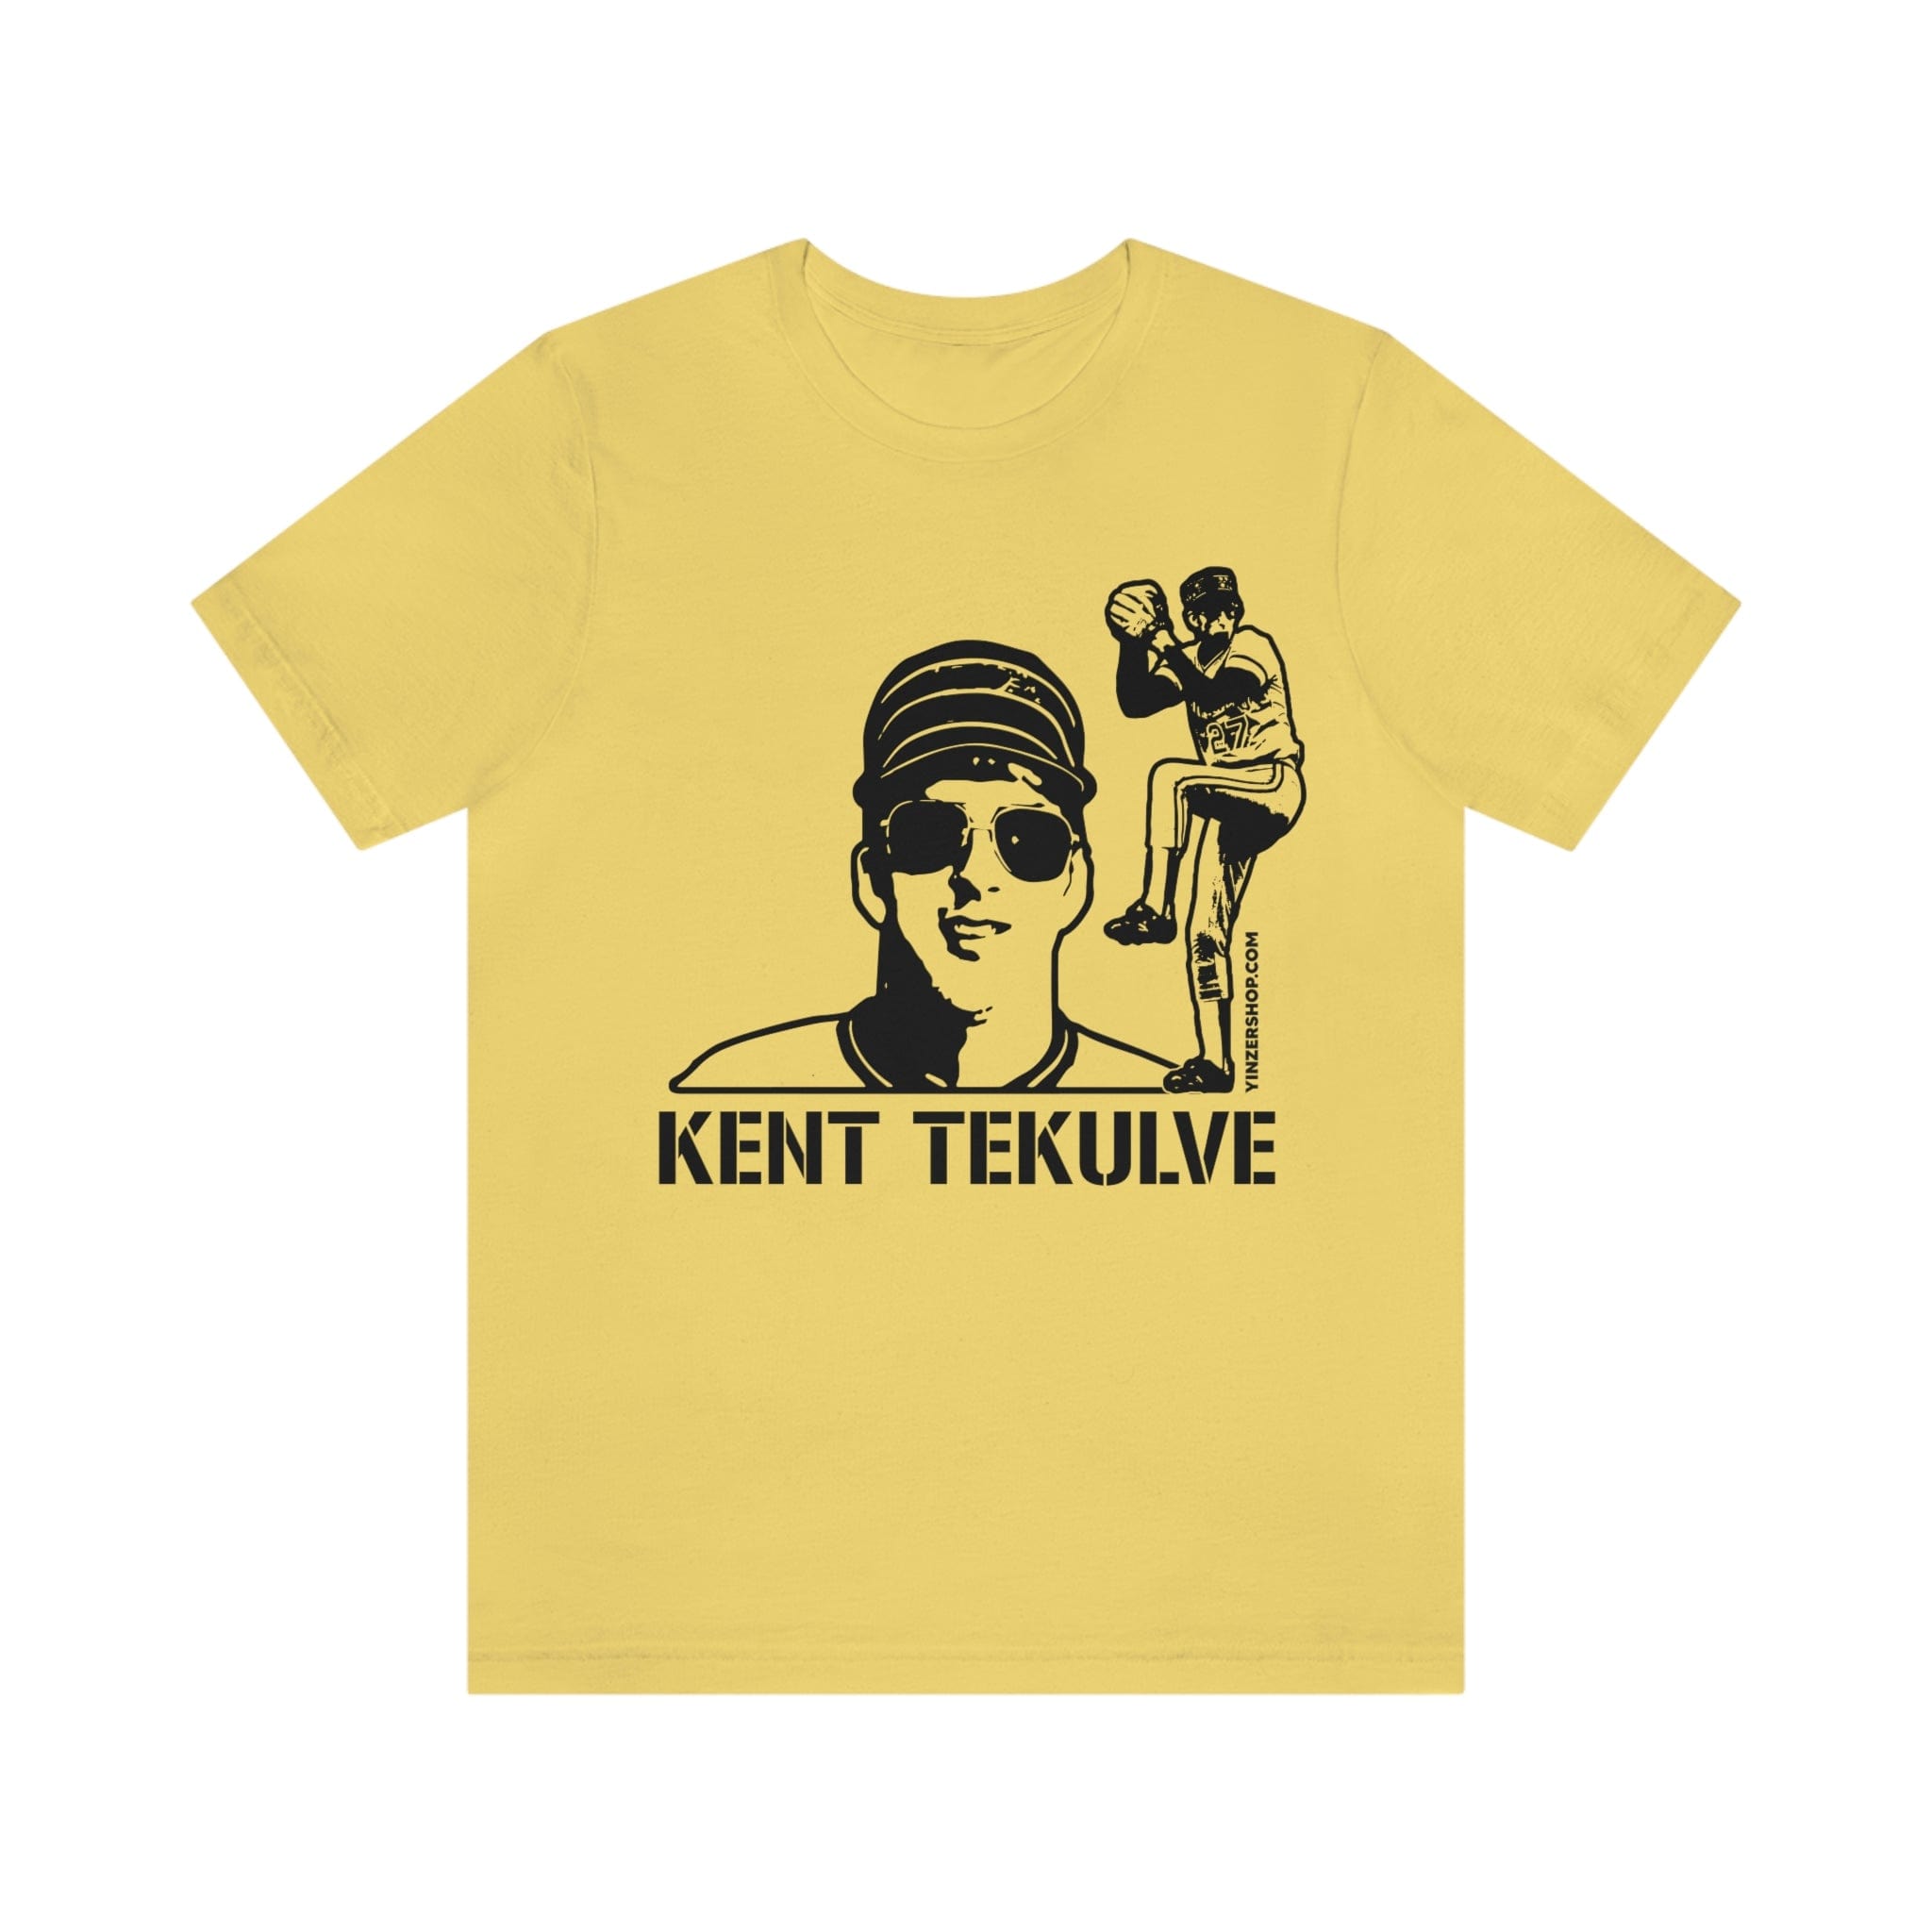 Kent Tekulve Legend Pittsburgh Pirates Shirt, hoodie, sweater